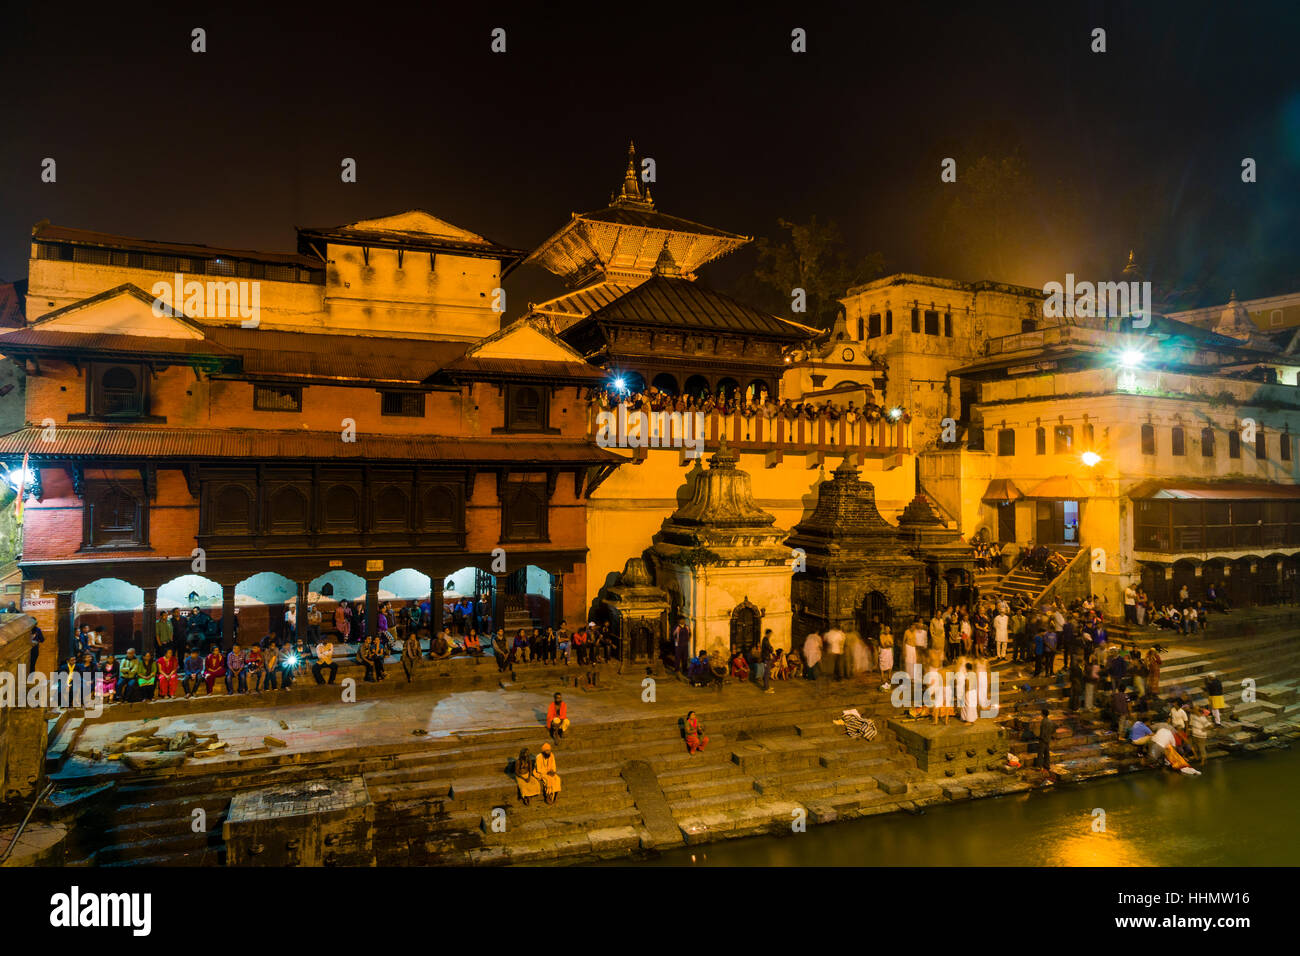 Pashupatinath temple avec les gens de gaths, rives de la rivière Bagmati, illuminé la nuit, Katmandou, Népal, du district de Katmandou Banque D'Images